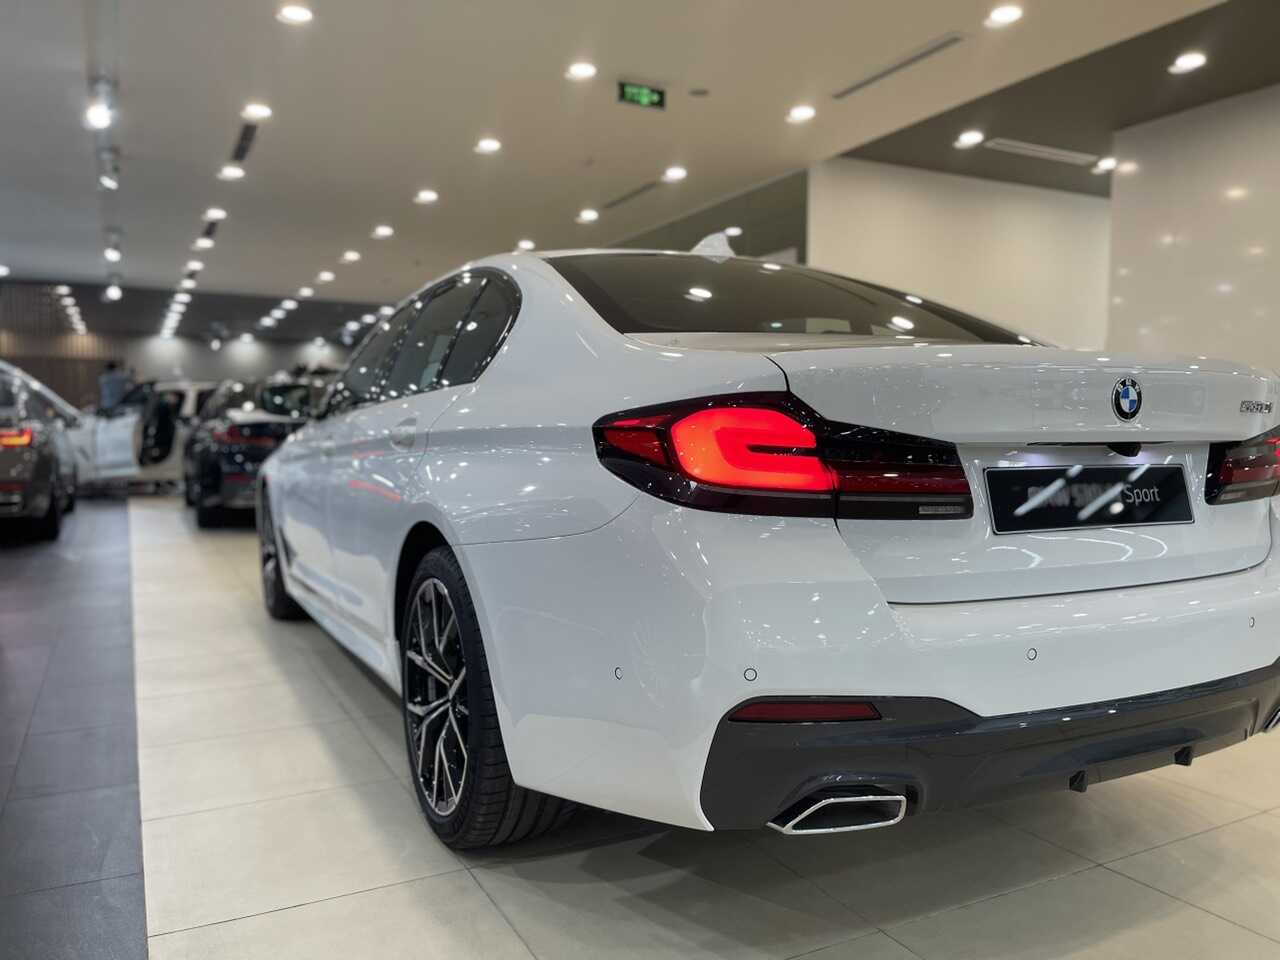 Phần đuôi xe BMW 530i 2021 và hệ thống đèn hậu 3D hoàn toàn mới.